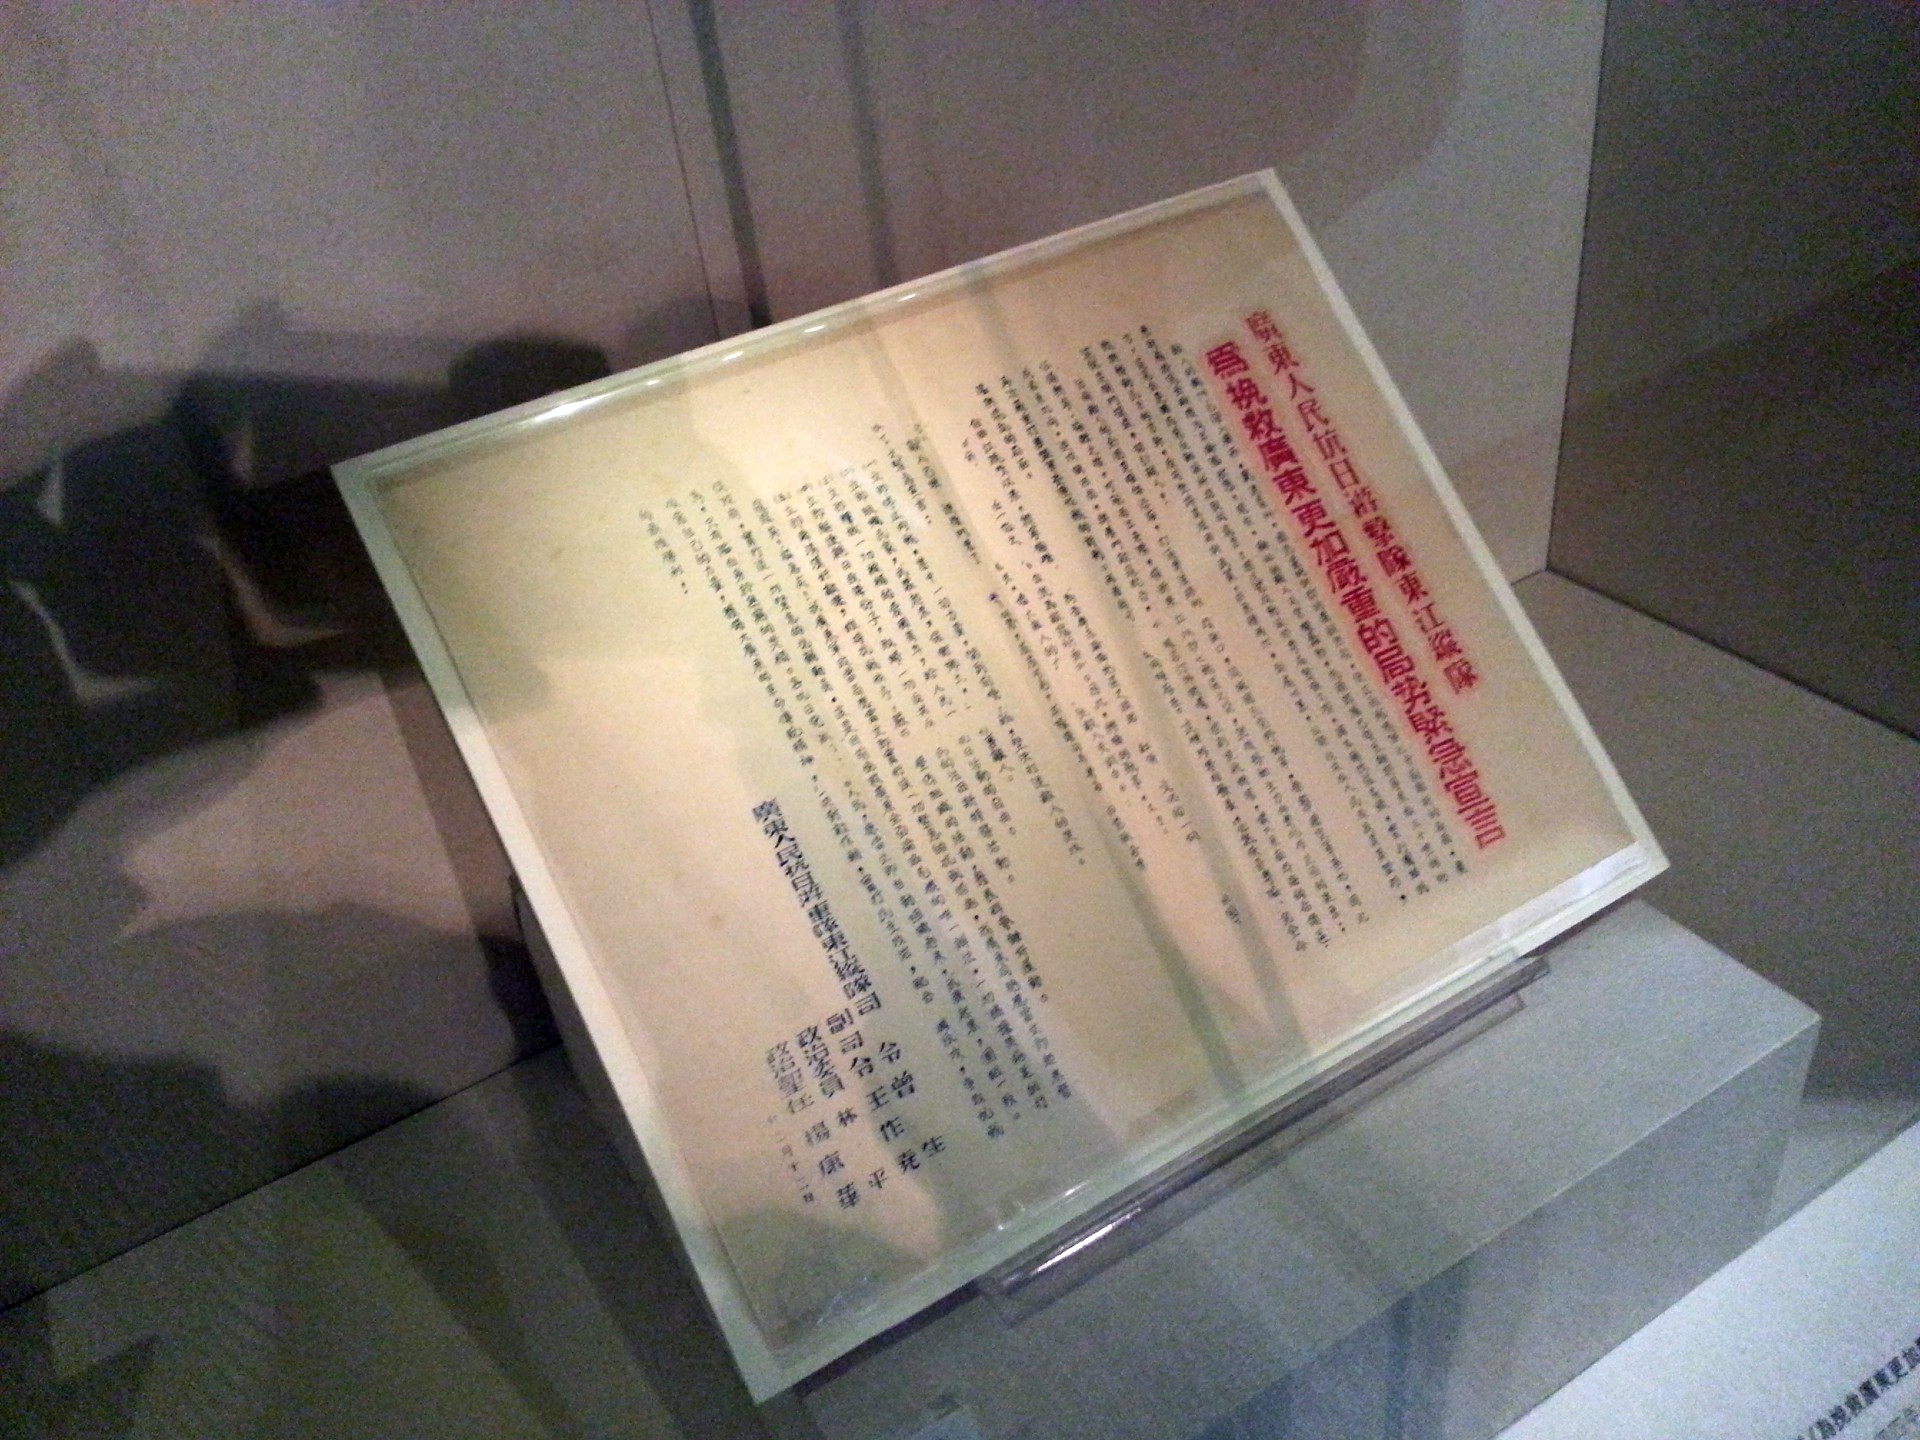 東江縱隊於1944年12月12日發表「為挽救廣東更加嚴重的局勢緊急宣言」號召各抗日黨派、各階層人民團結一致，堅決對敵軍作戰，以爭取抗戰的最後勝利。